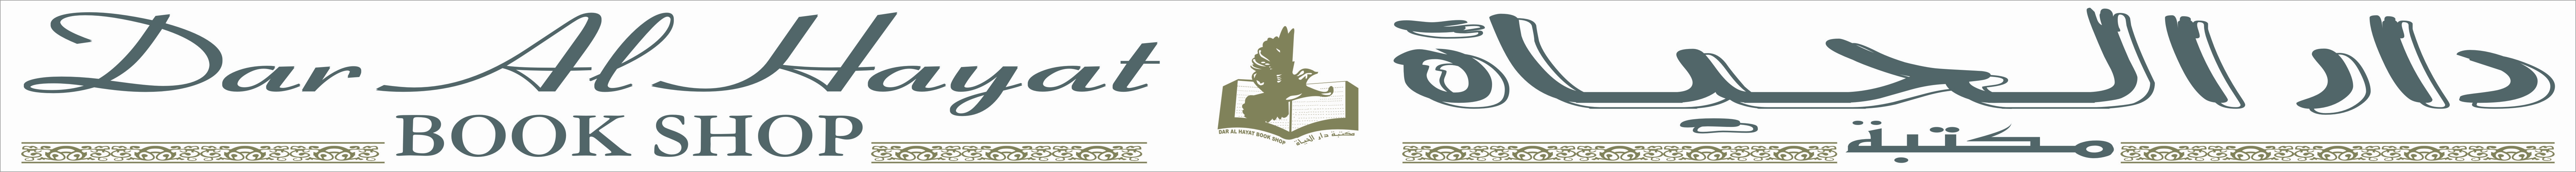 Dar Al Hayat Bookshop 